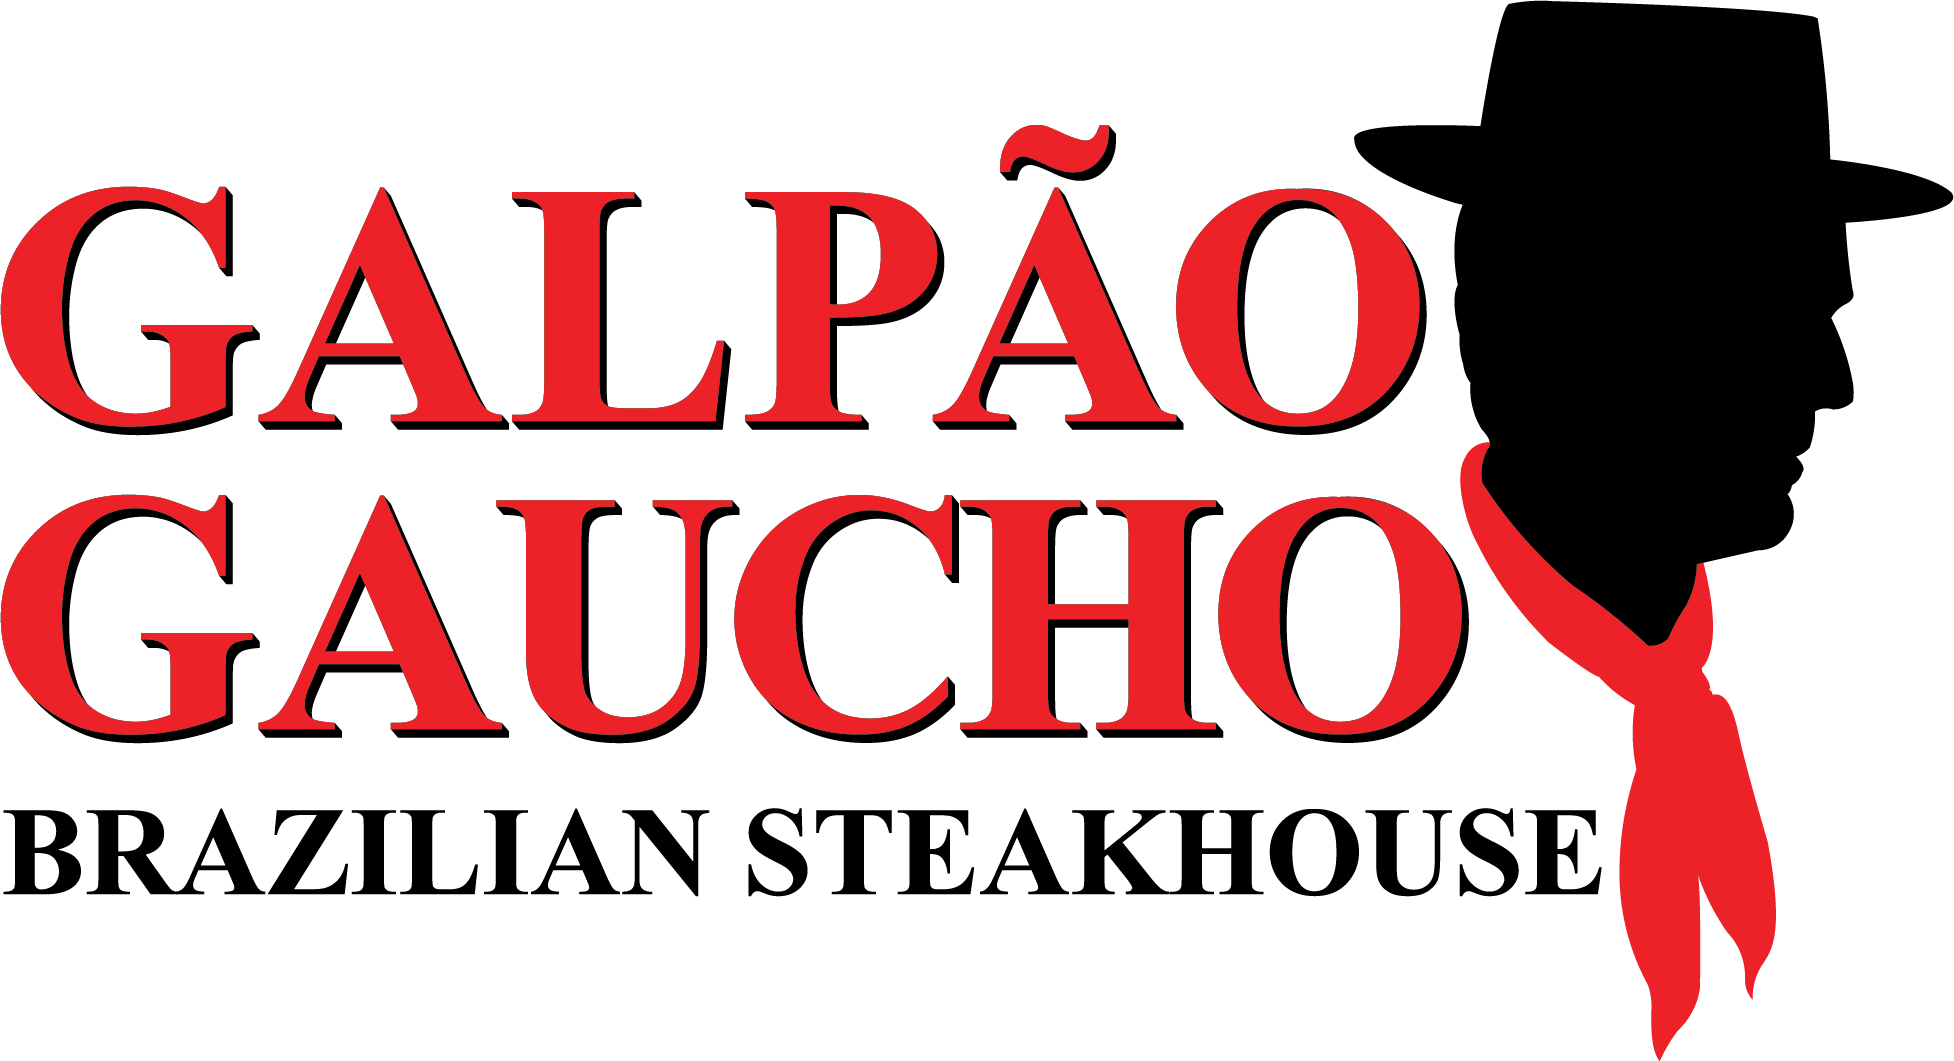 Galpao Gaucho Logo PNG